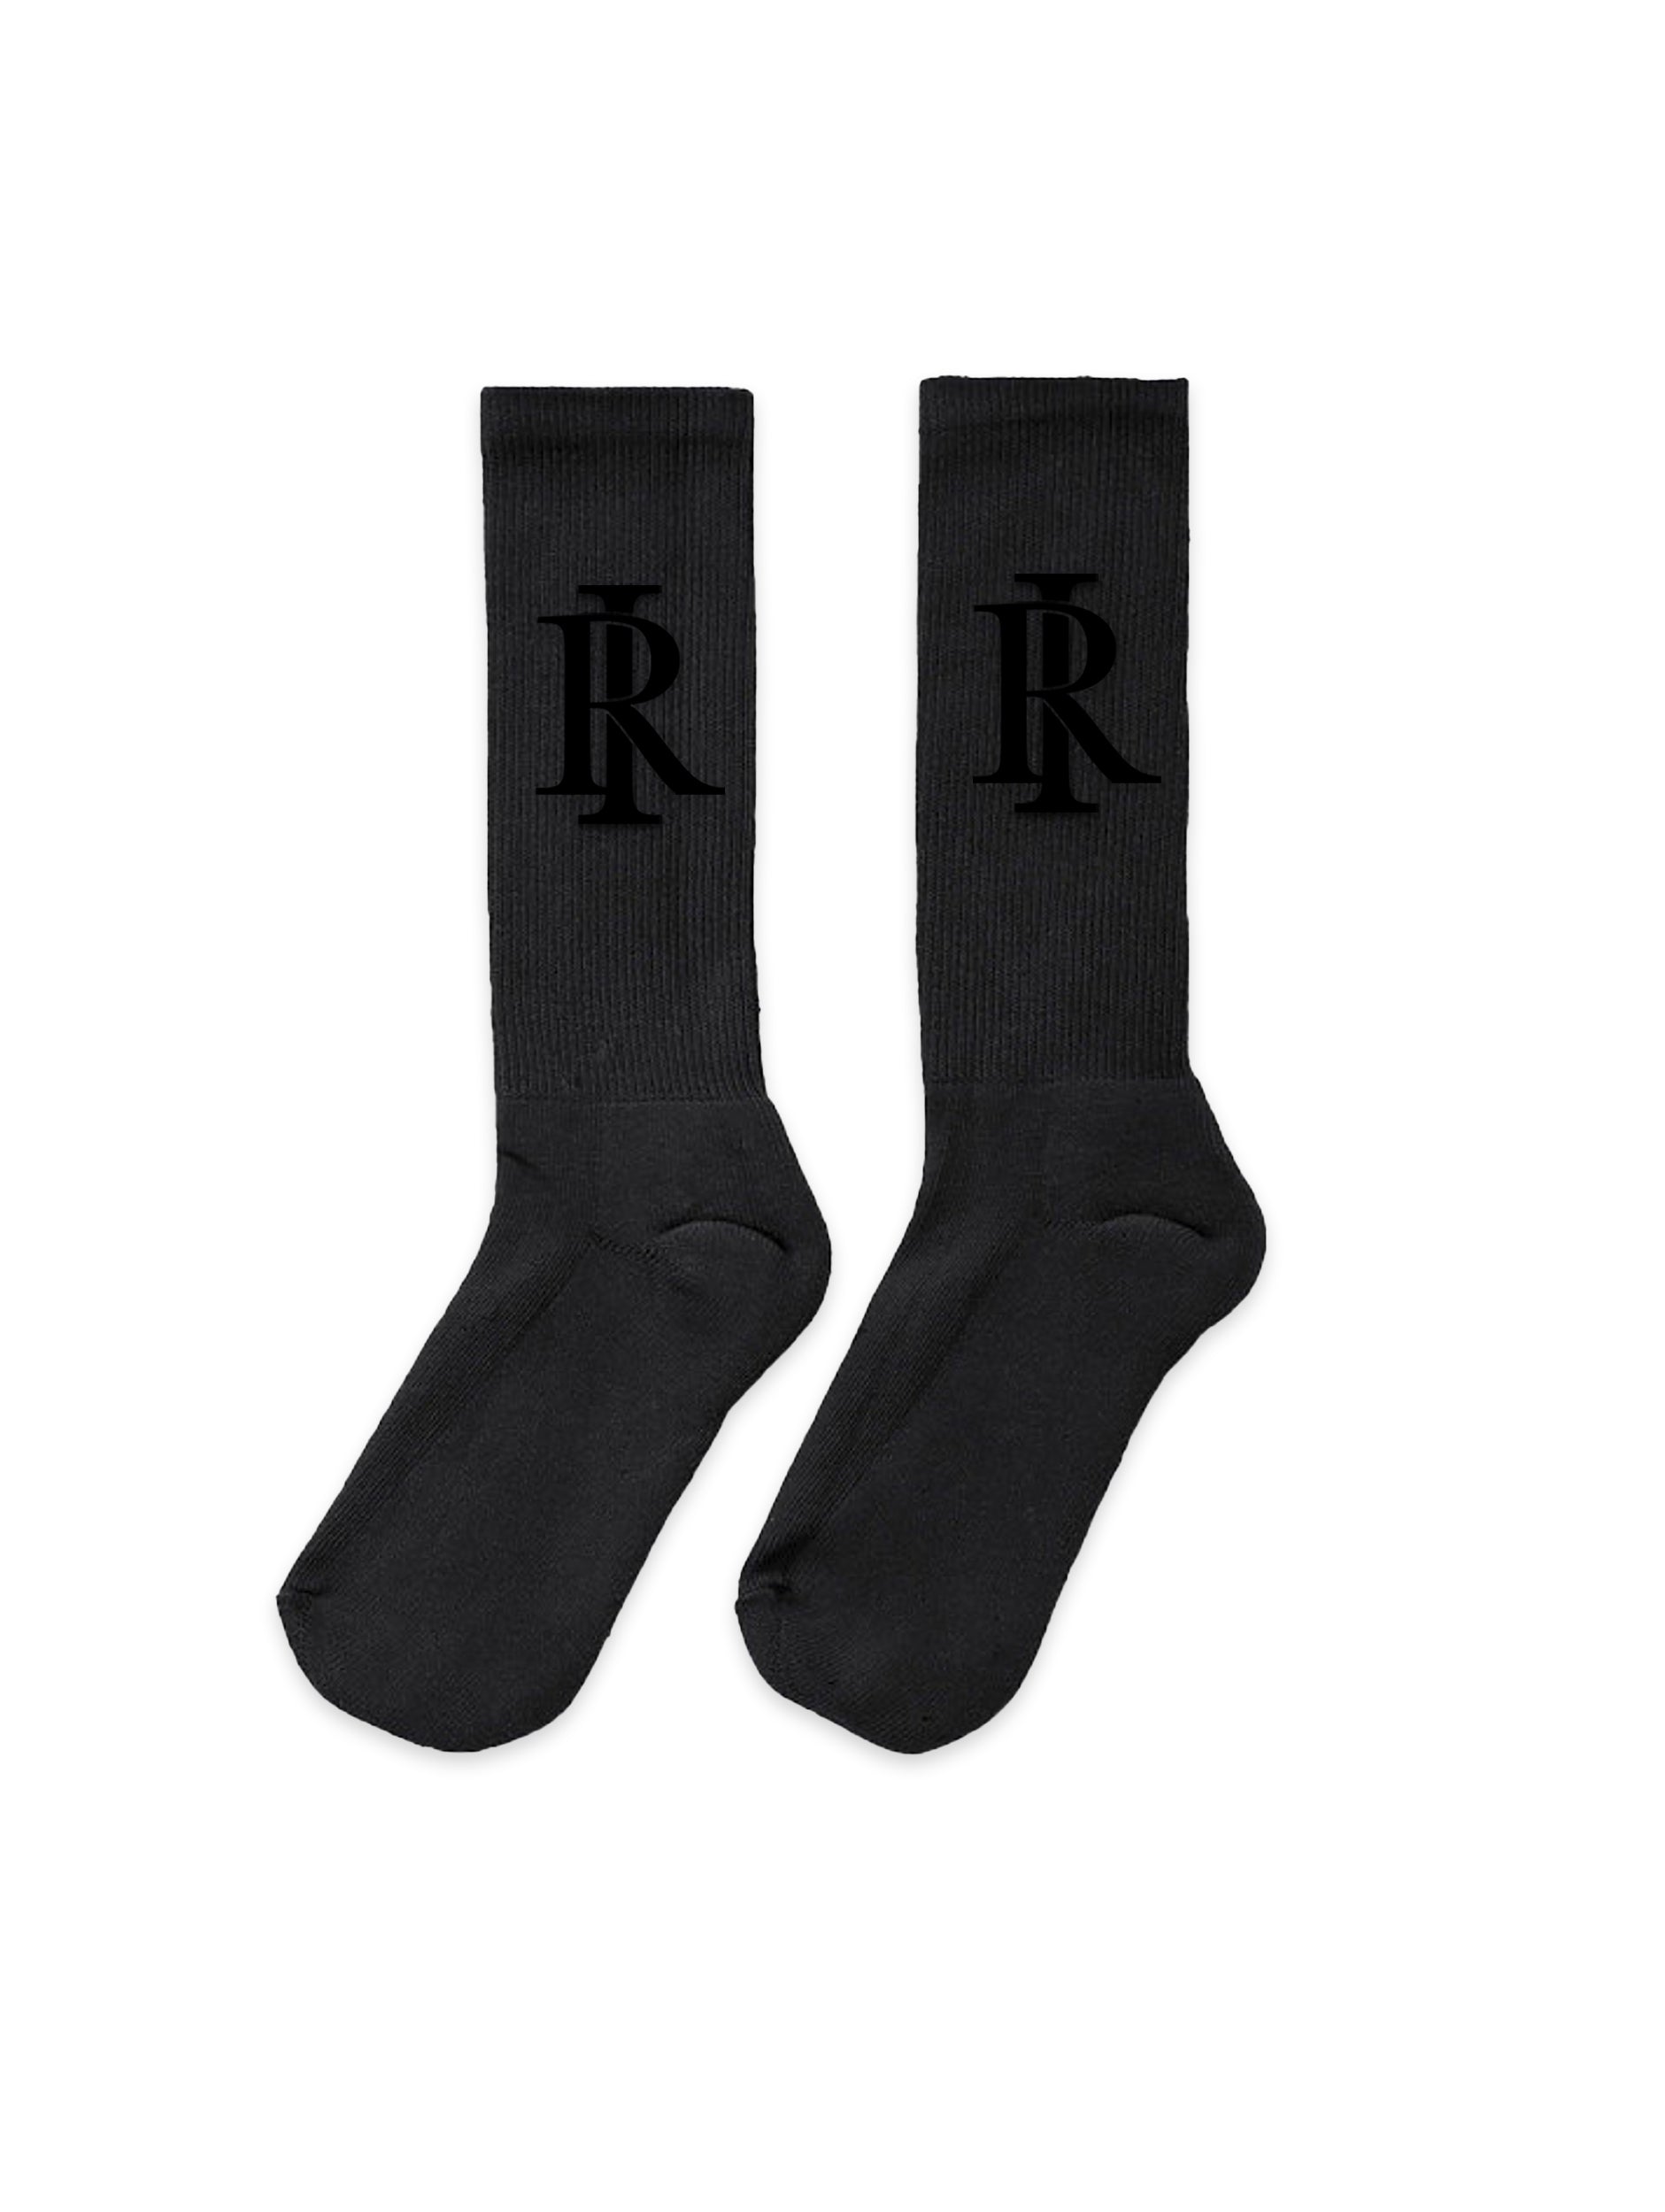 Monogram Socks - All Black